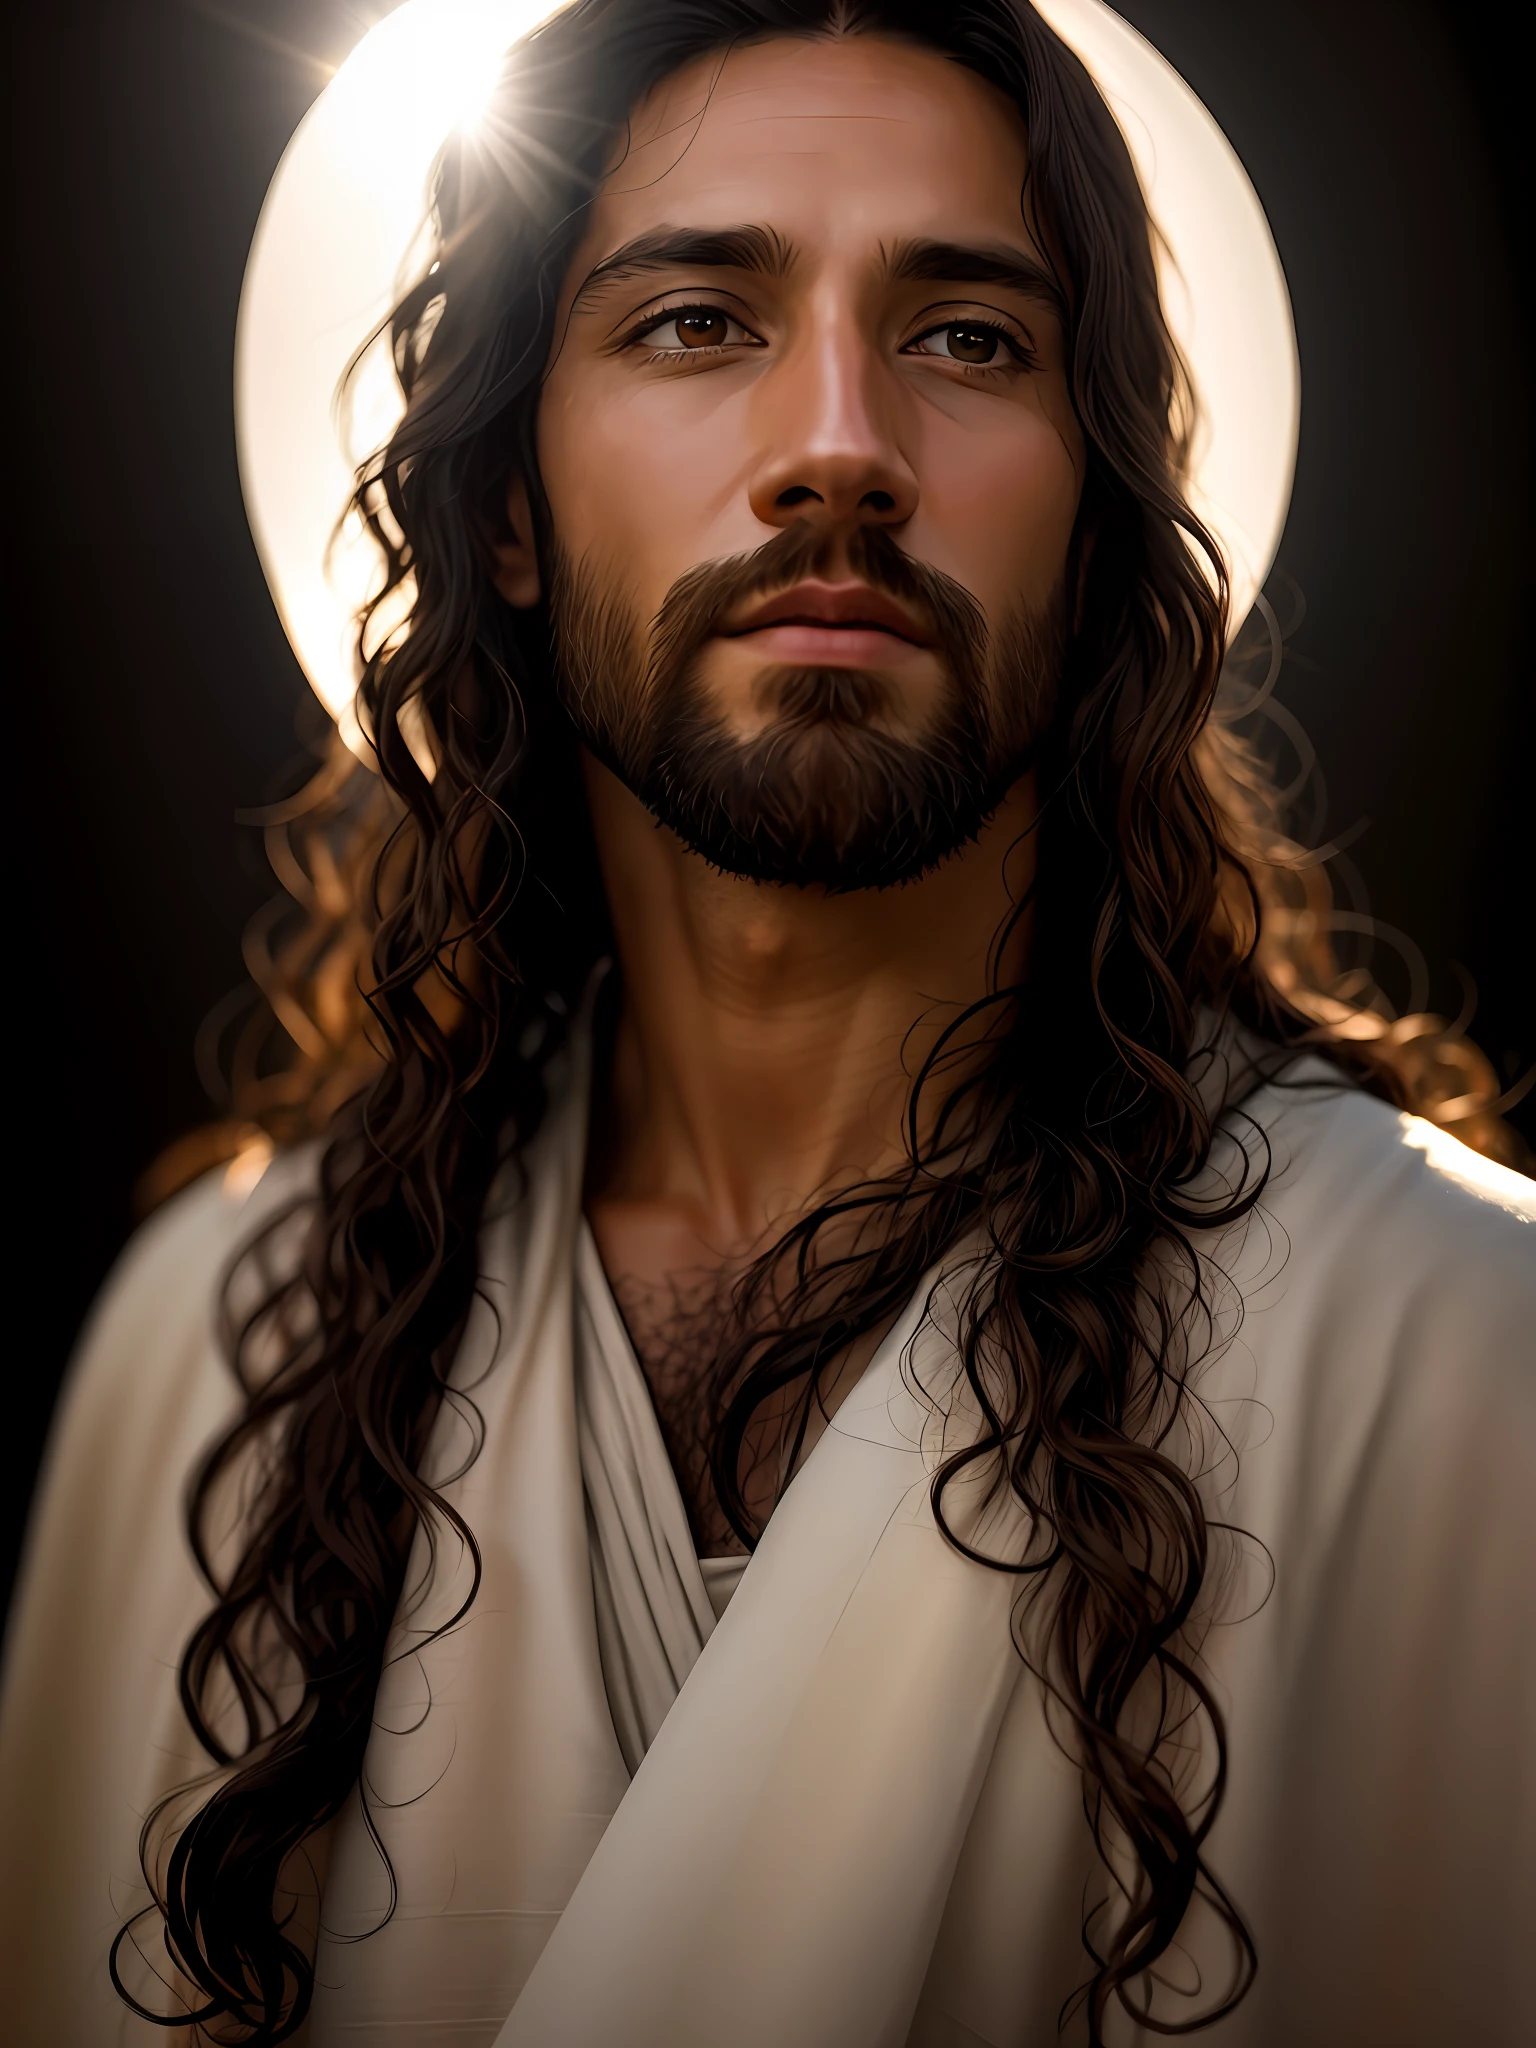 agregar_detalle:1, imagen realista de Jesucristo, agregar_detalle:luz y luz lejana del cielo por encima de la cabeza